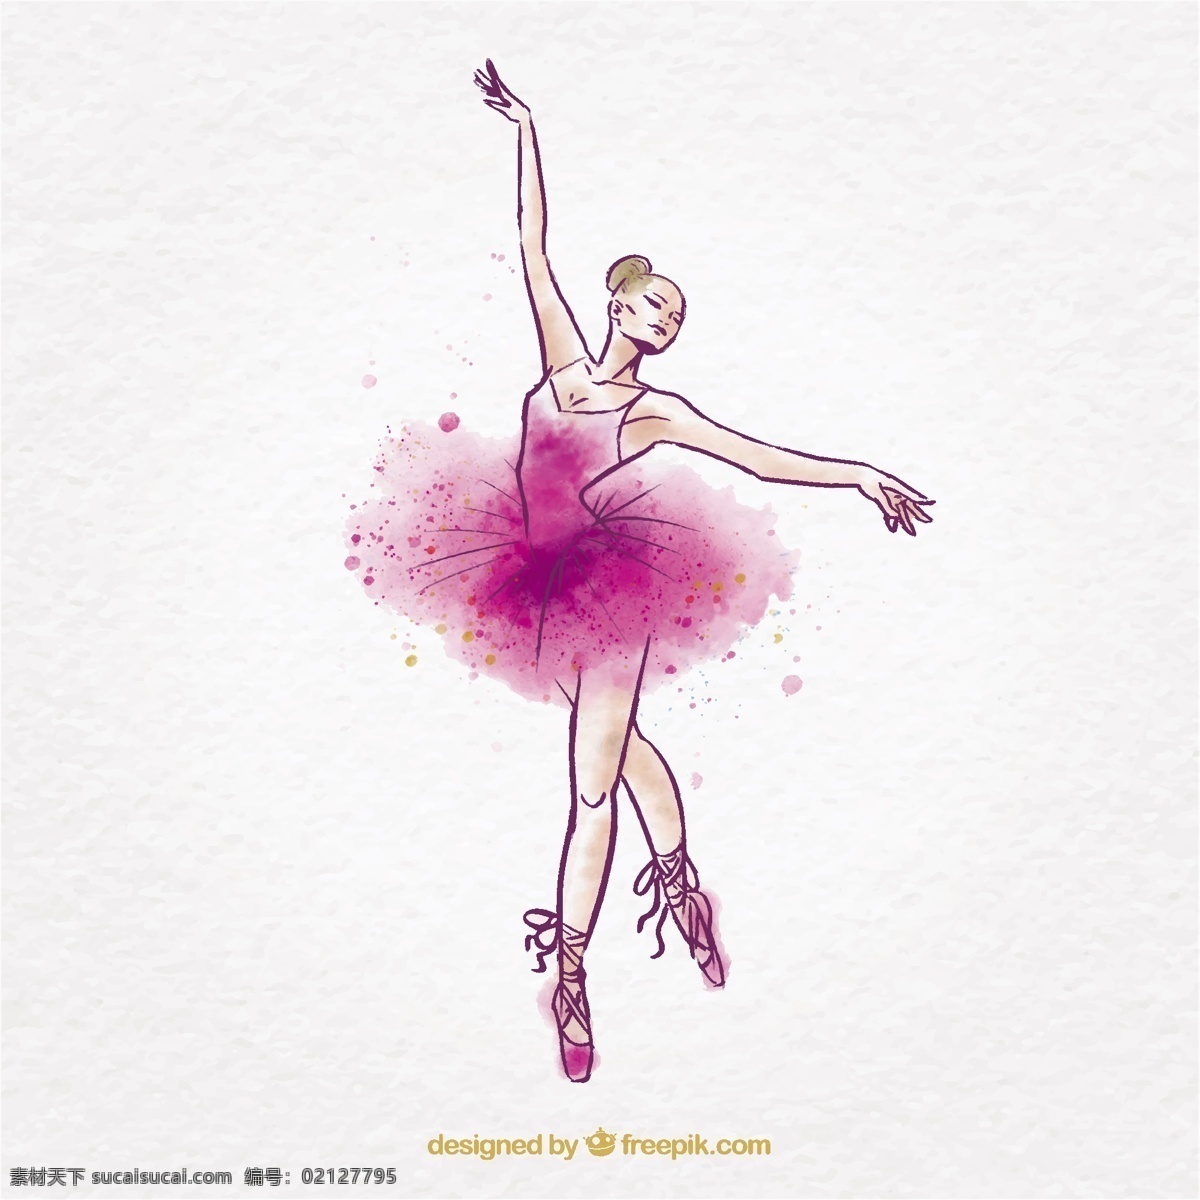 水彩芭蕾舞女 水彩 手 粉红色 手绘 飞溅 舞蹈 艺术 水墨画 芭蕾舞 艺术家 舞蹈家 芭蕾舞演员 绘画 移动 运动 粗略